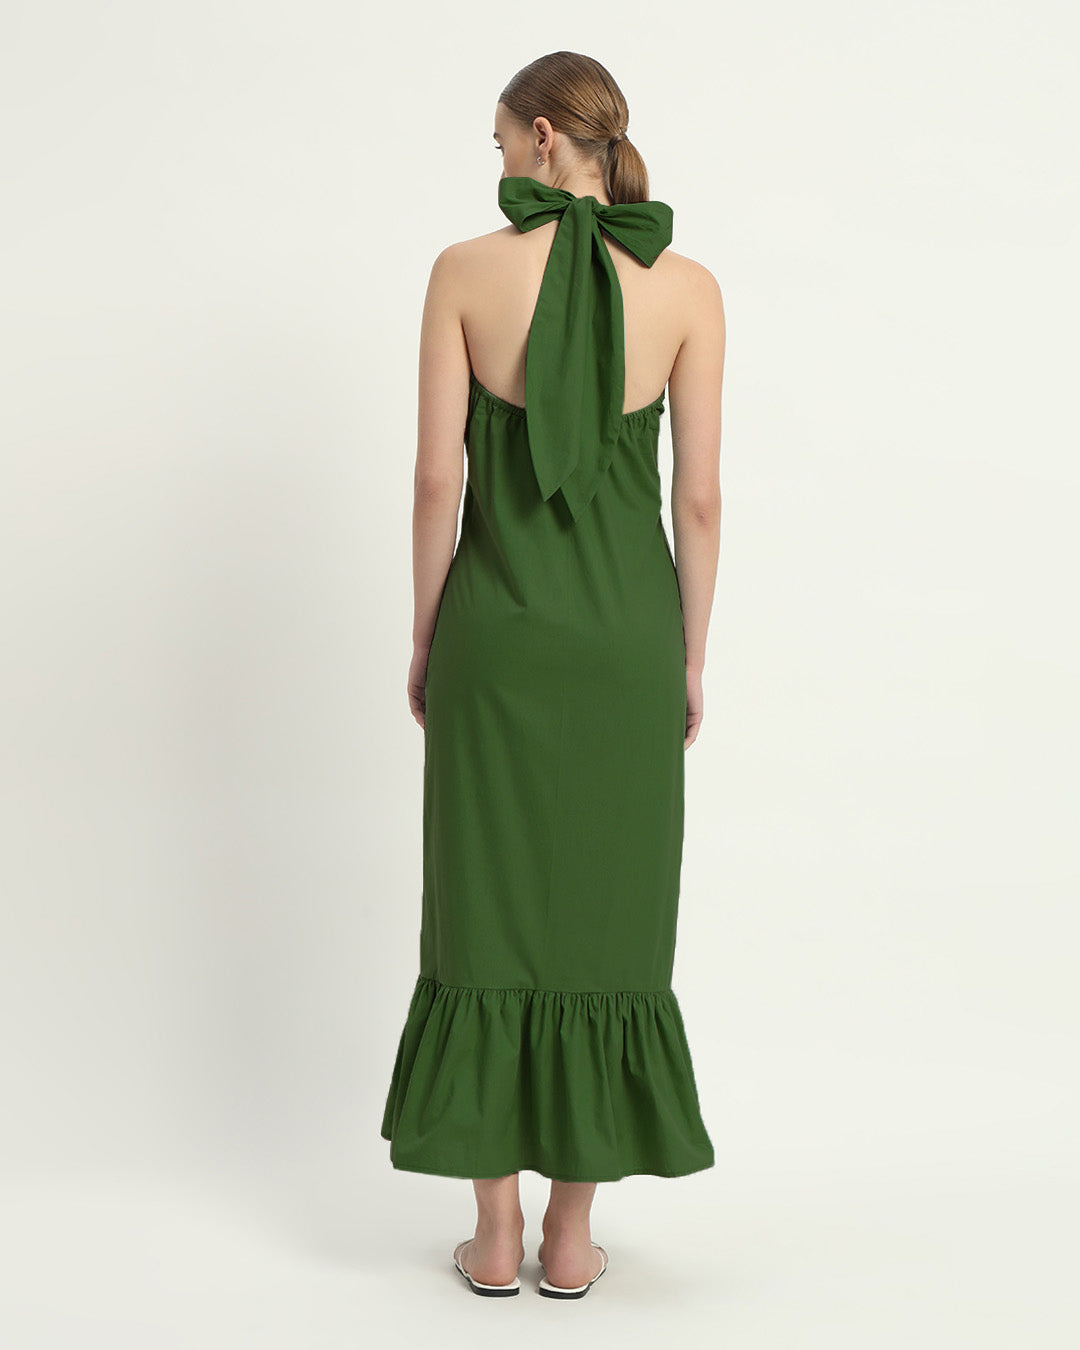 The Wellsville Emerald Cotton Dress